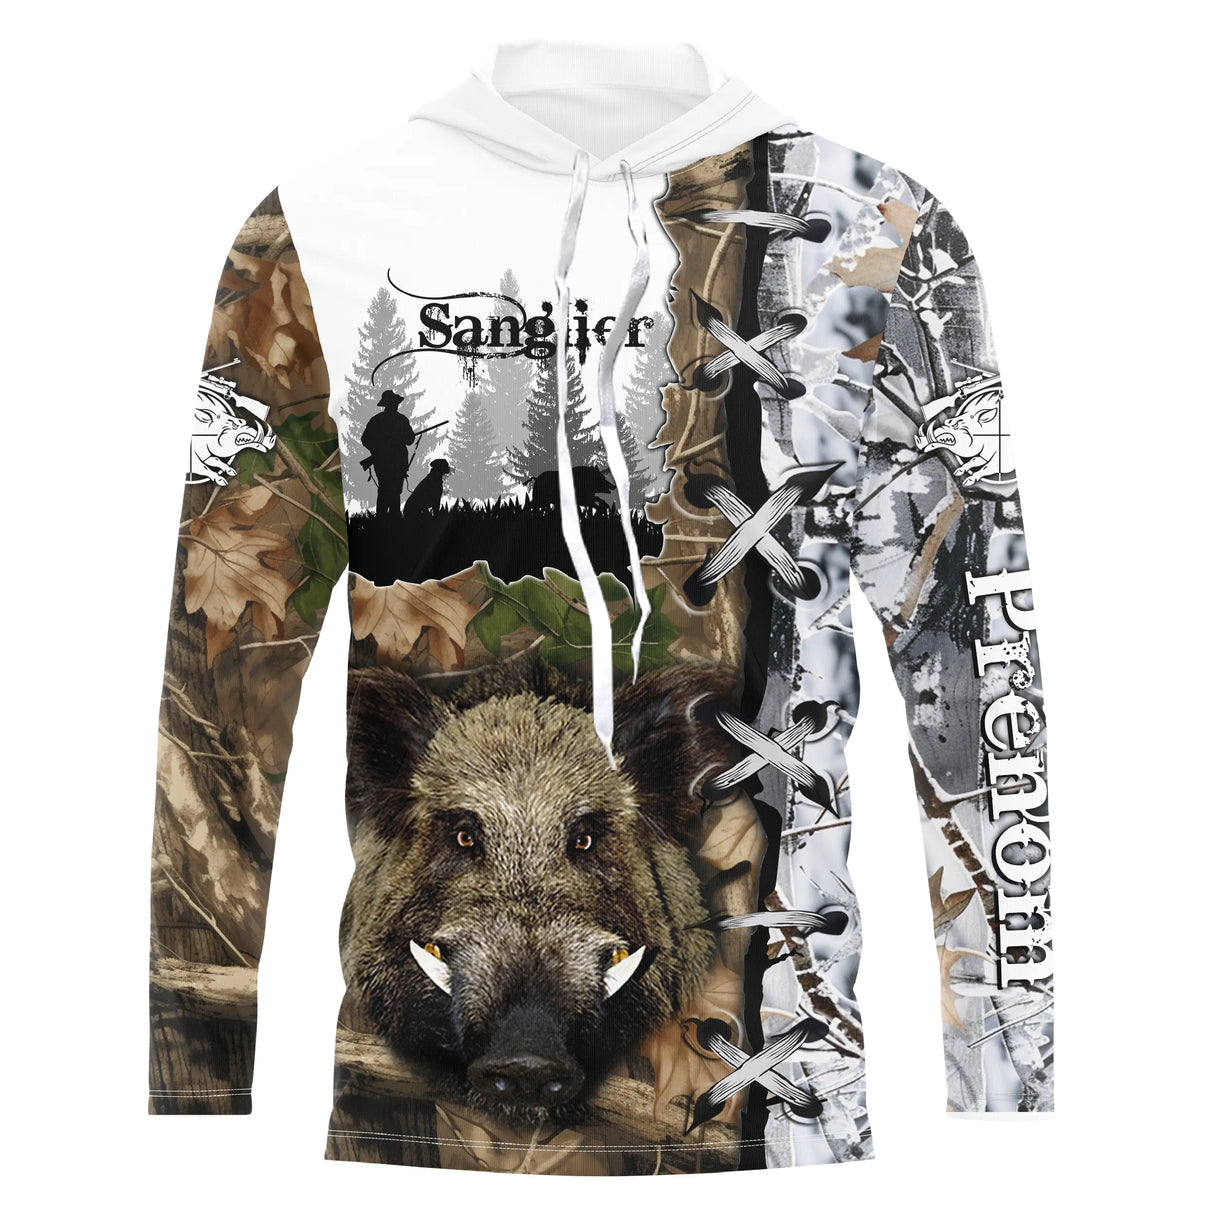 Camiseta de caza de jabalí, regalo personalizado de cazadores - CT29082220